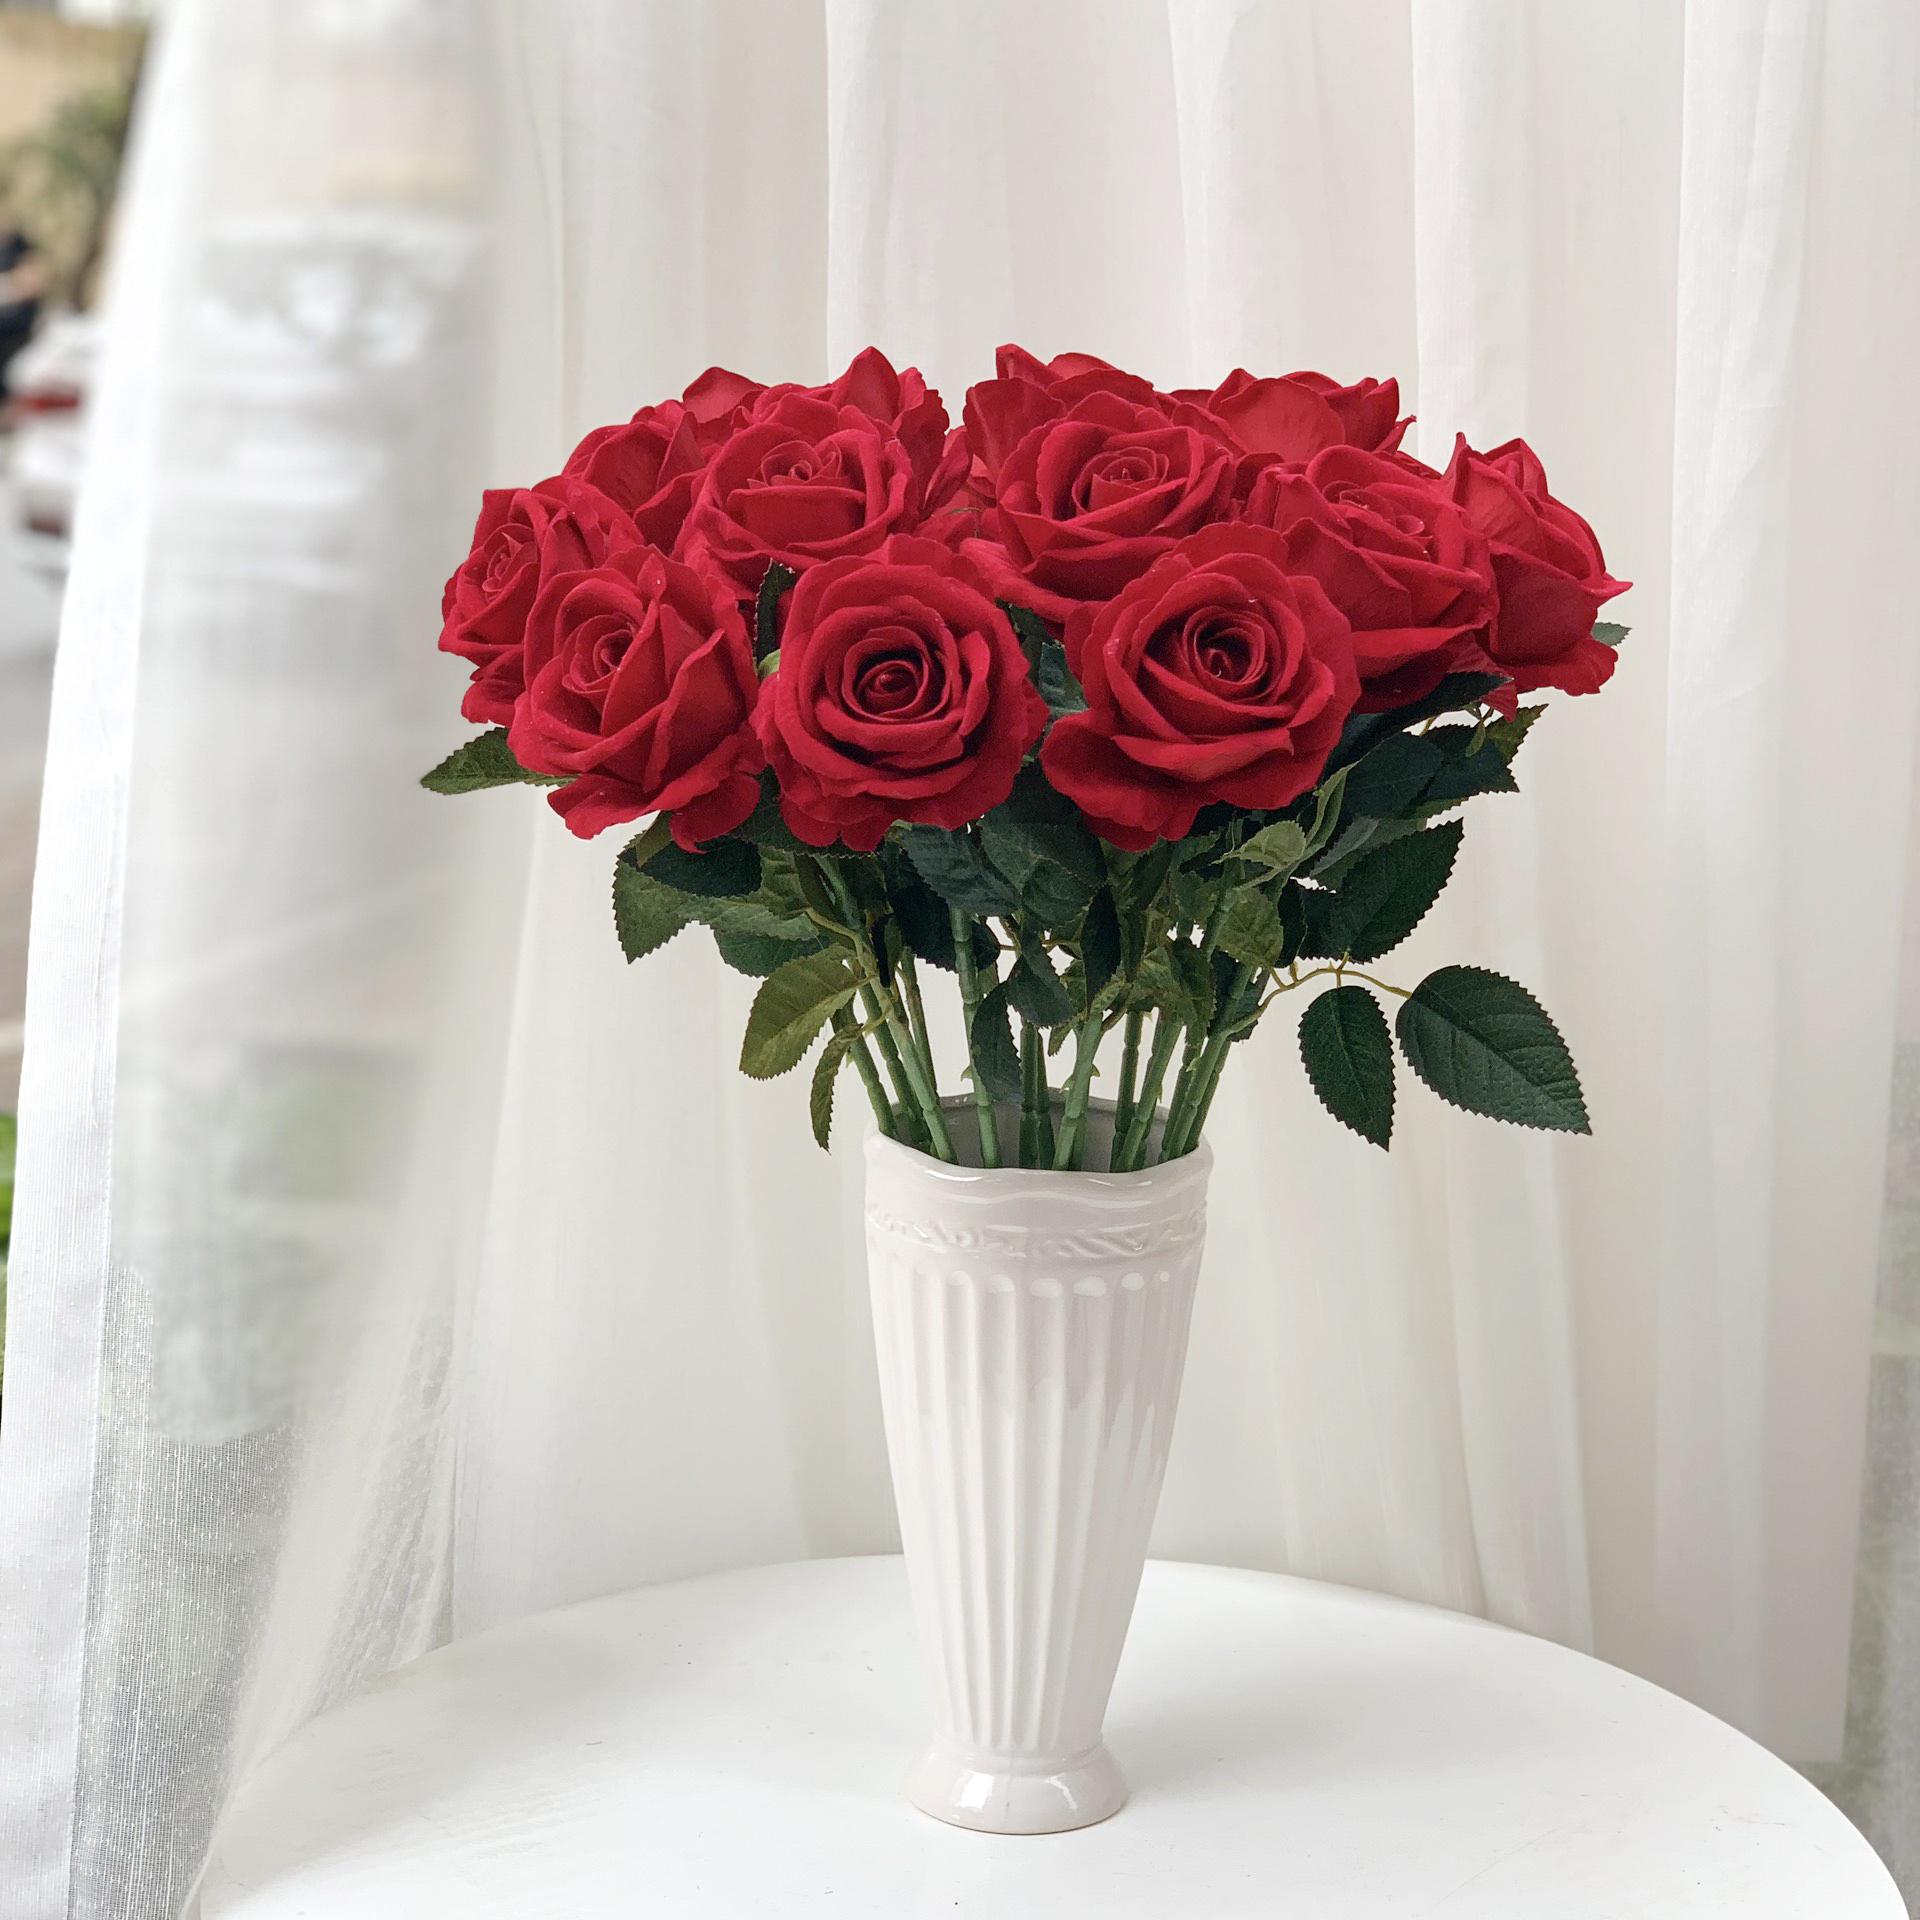 Combo 5 bông hoa hồng giả nhân tạo không kèm lọ hoa - Đỏ sẫm